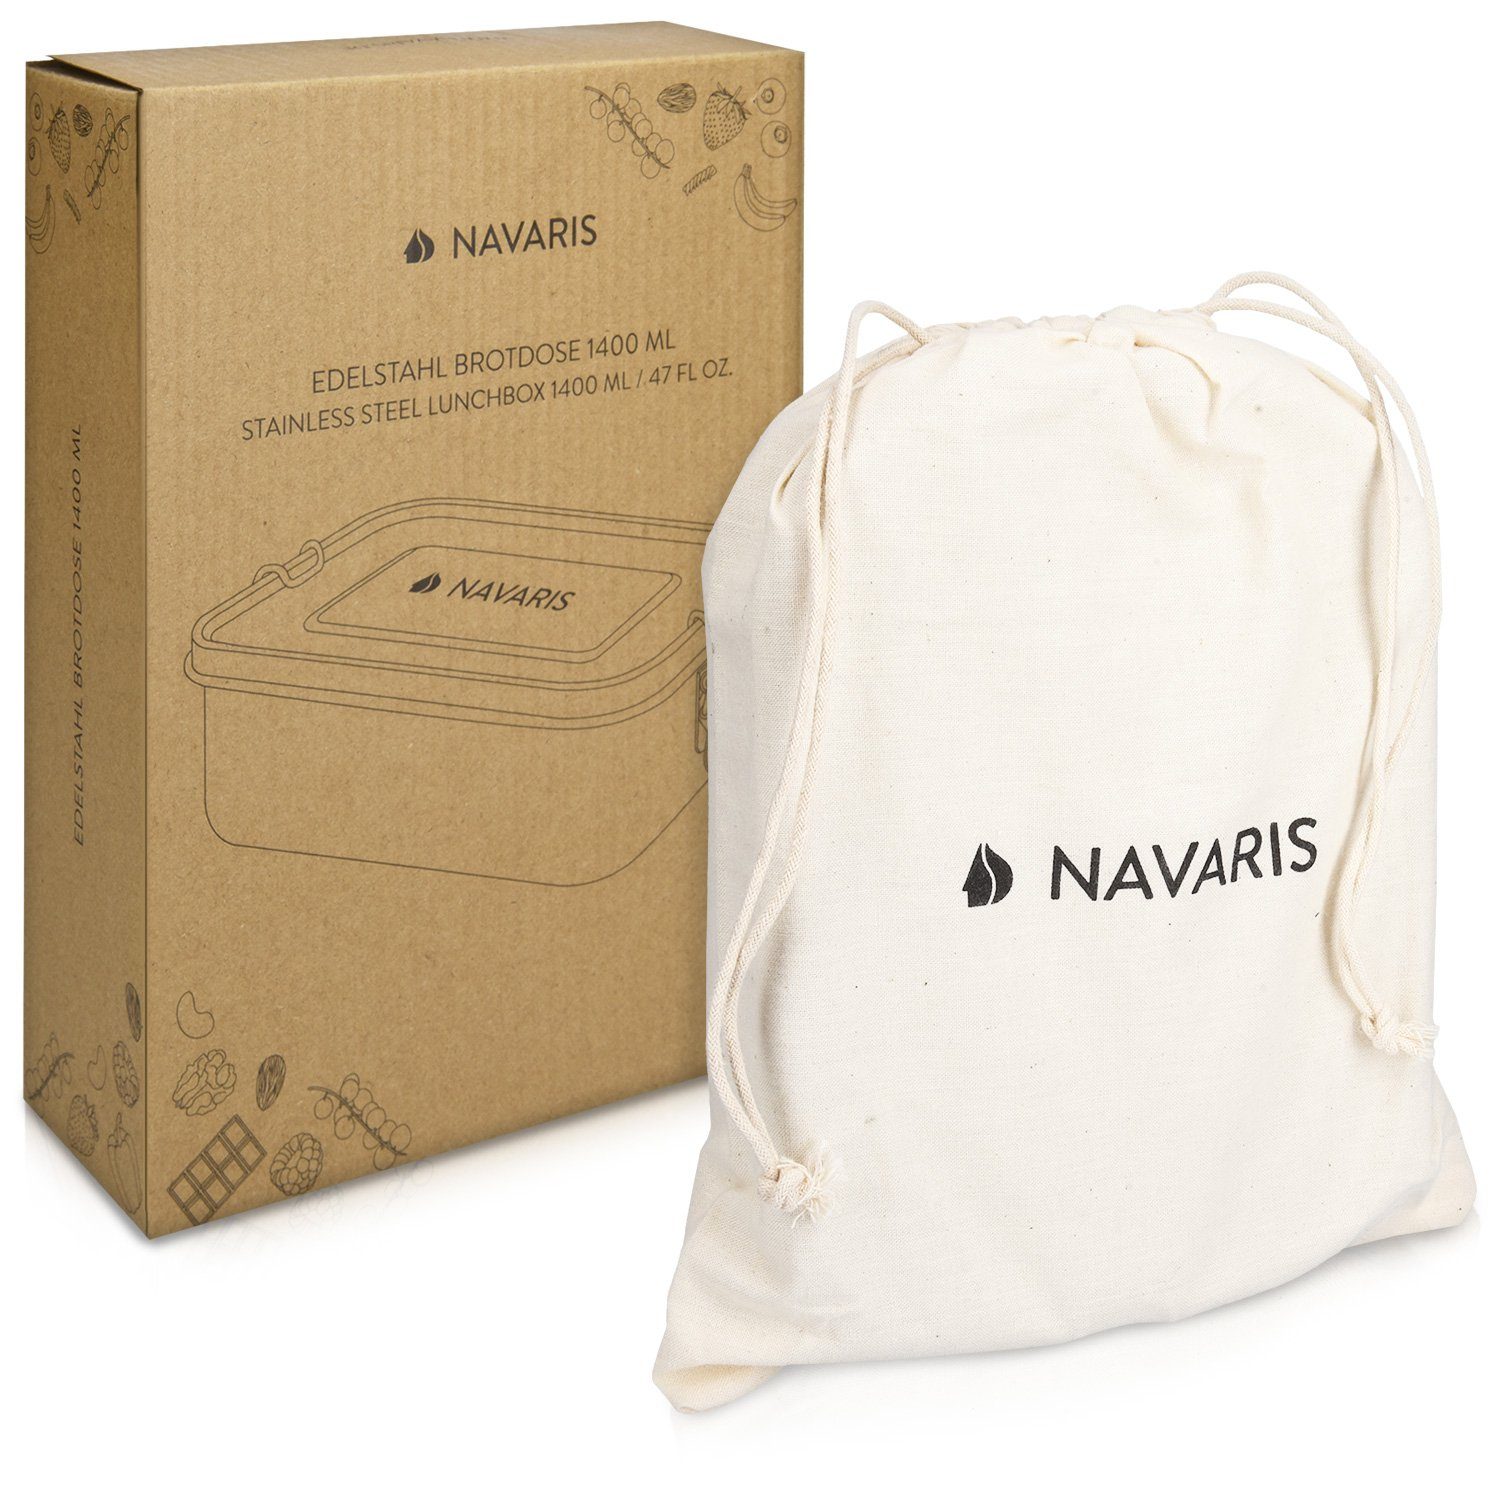 Navaris Lunchbox Edelstahl Brotdose 1400 und spülmaschinenfest, auslaufsicher Edelstahl ml 